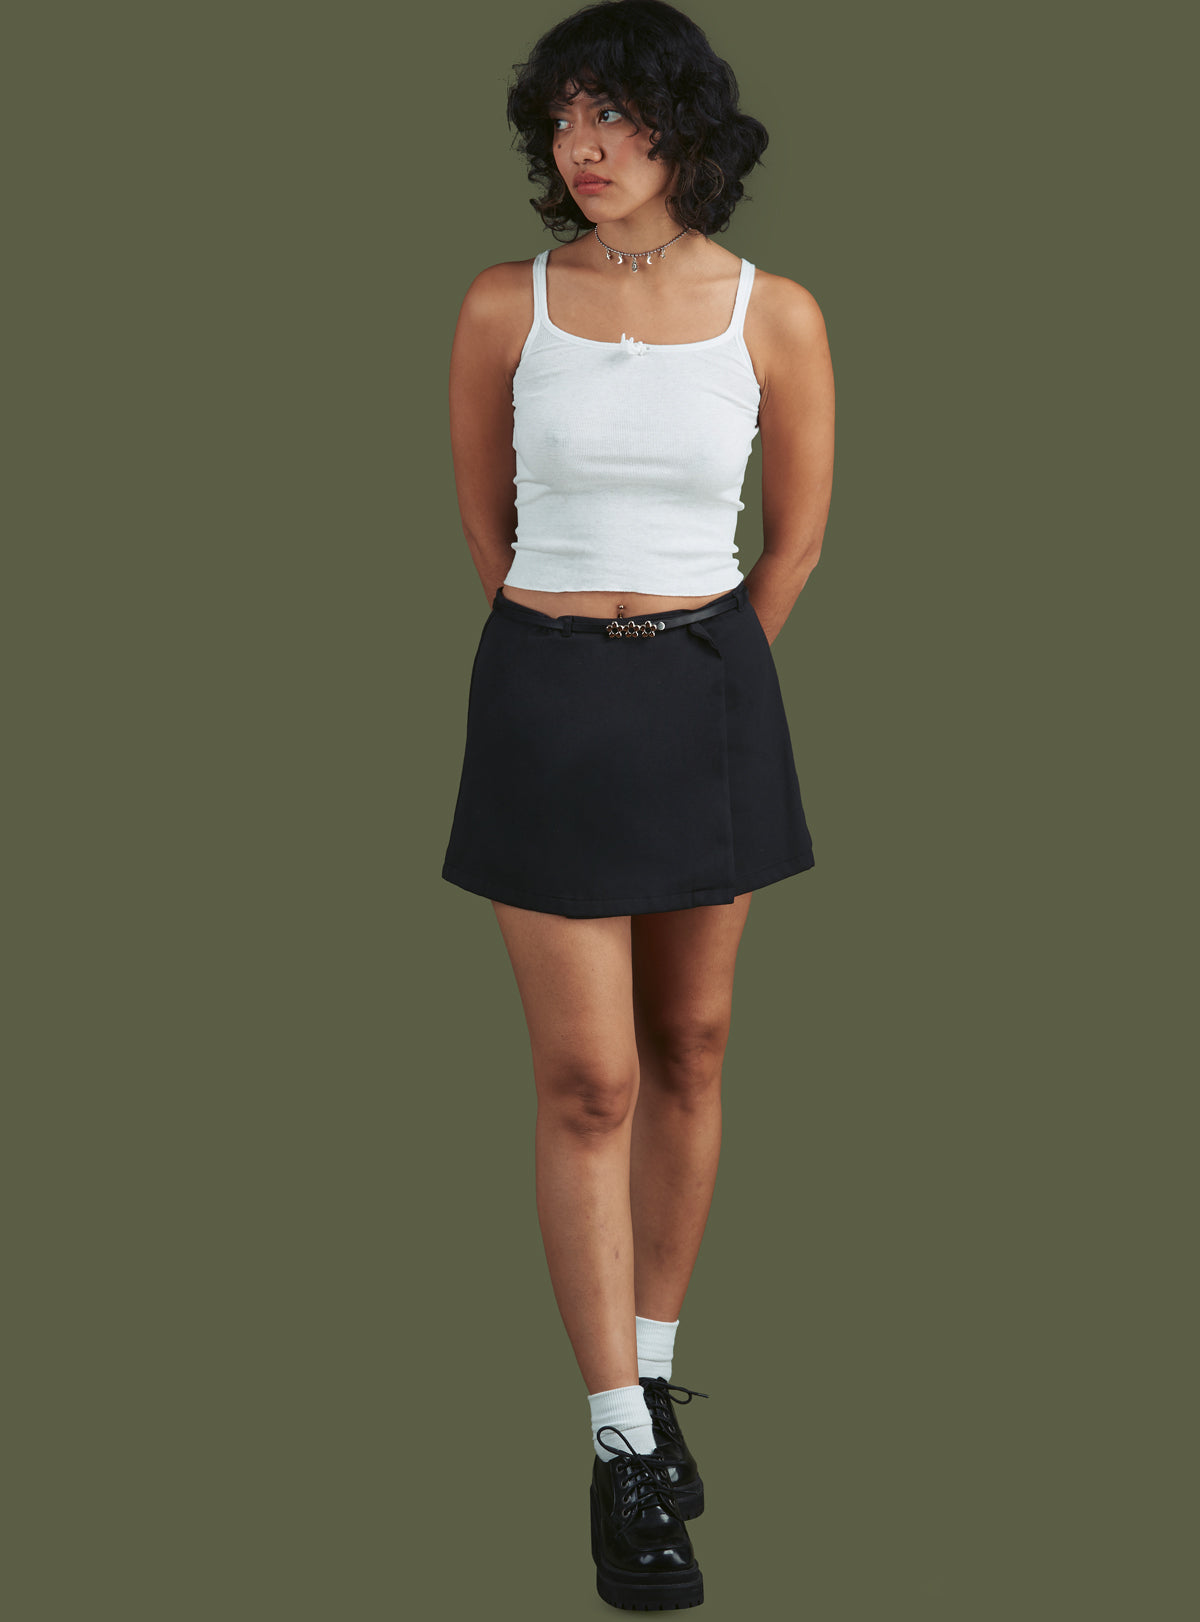 Ace Skirt